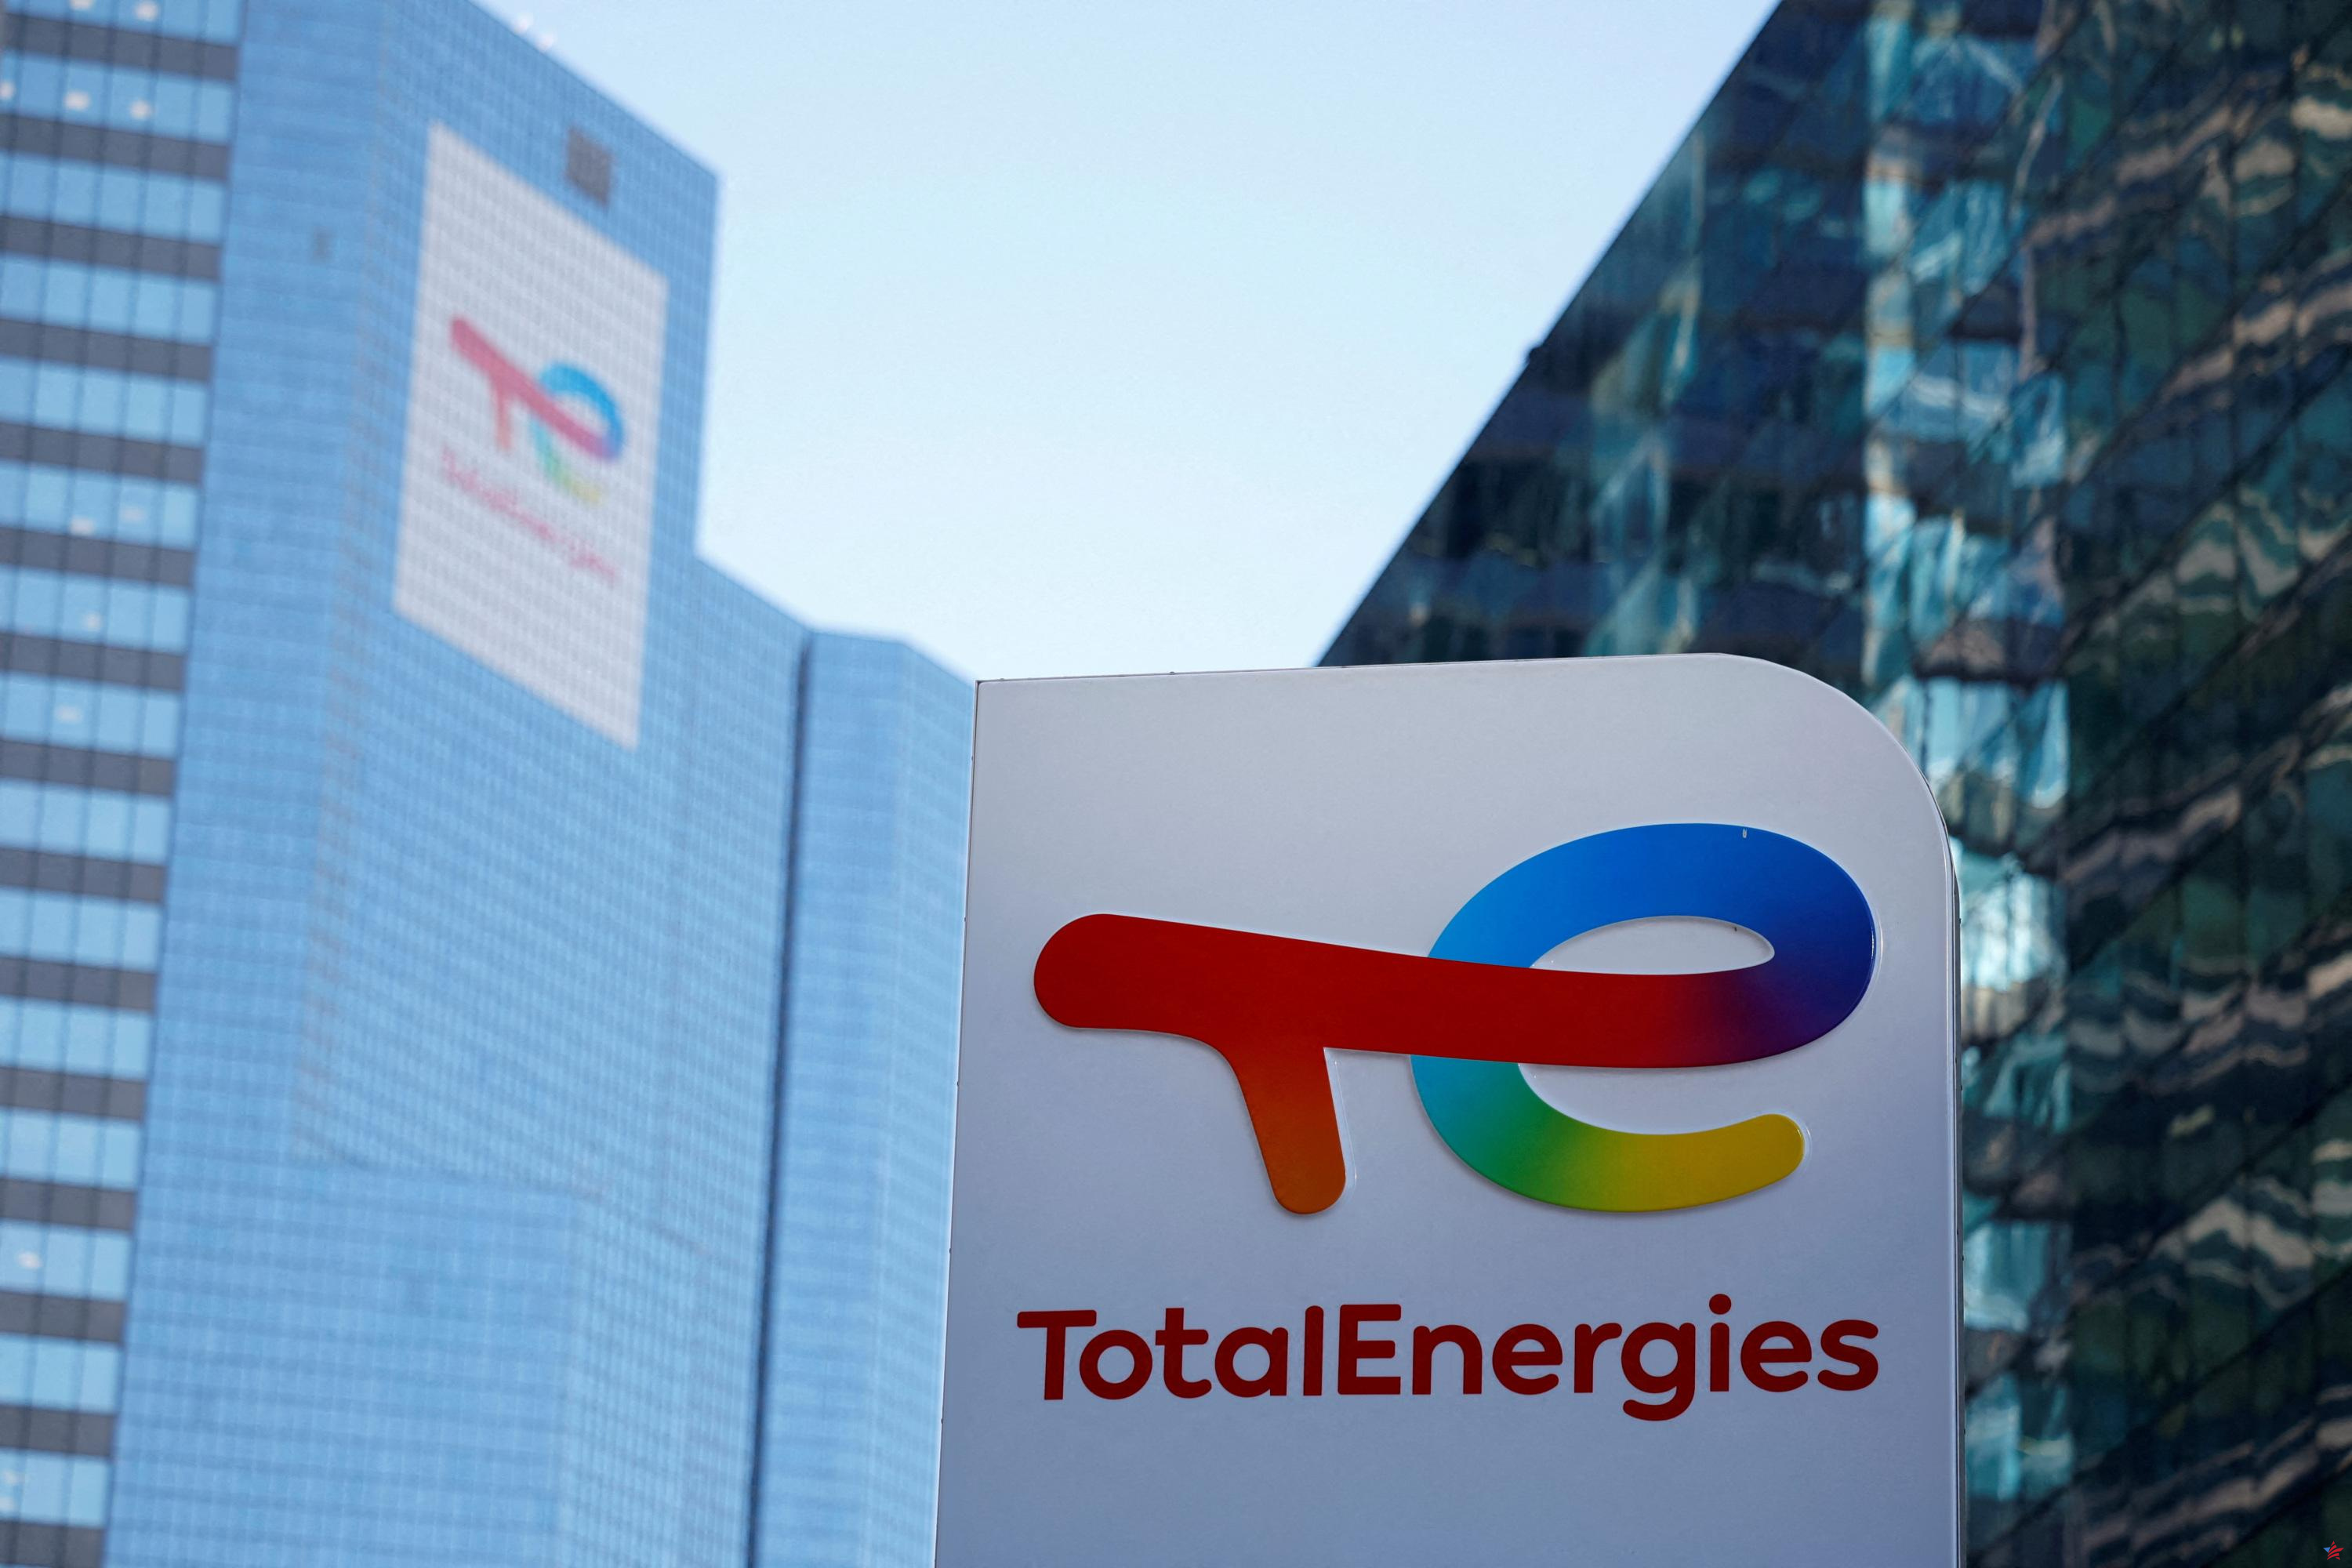 Estaciones de servicio: TotalEnergies ultima su acuerdo con Couche-Tard por 3.400 millones de euros